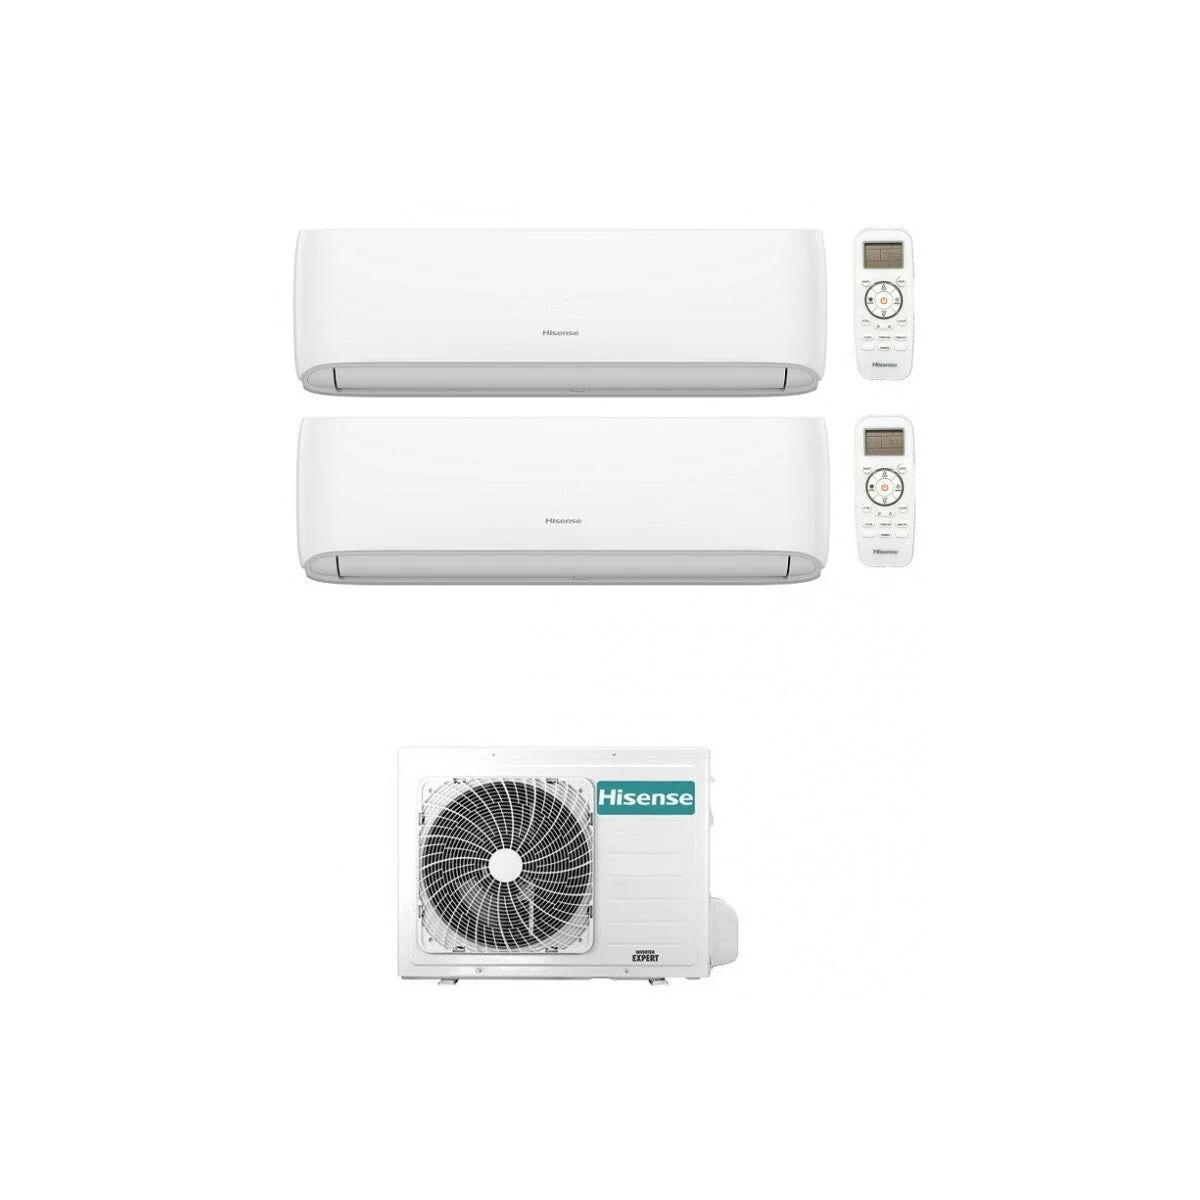 Condizionatore Hisense Hi-Comfort Dual Split 7000+9000 Btu Inverter R32 2Amw42U4Rgc A++/A+ Wifi